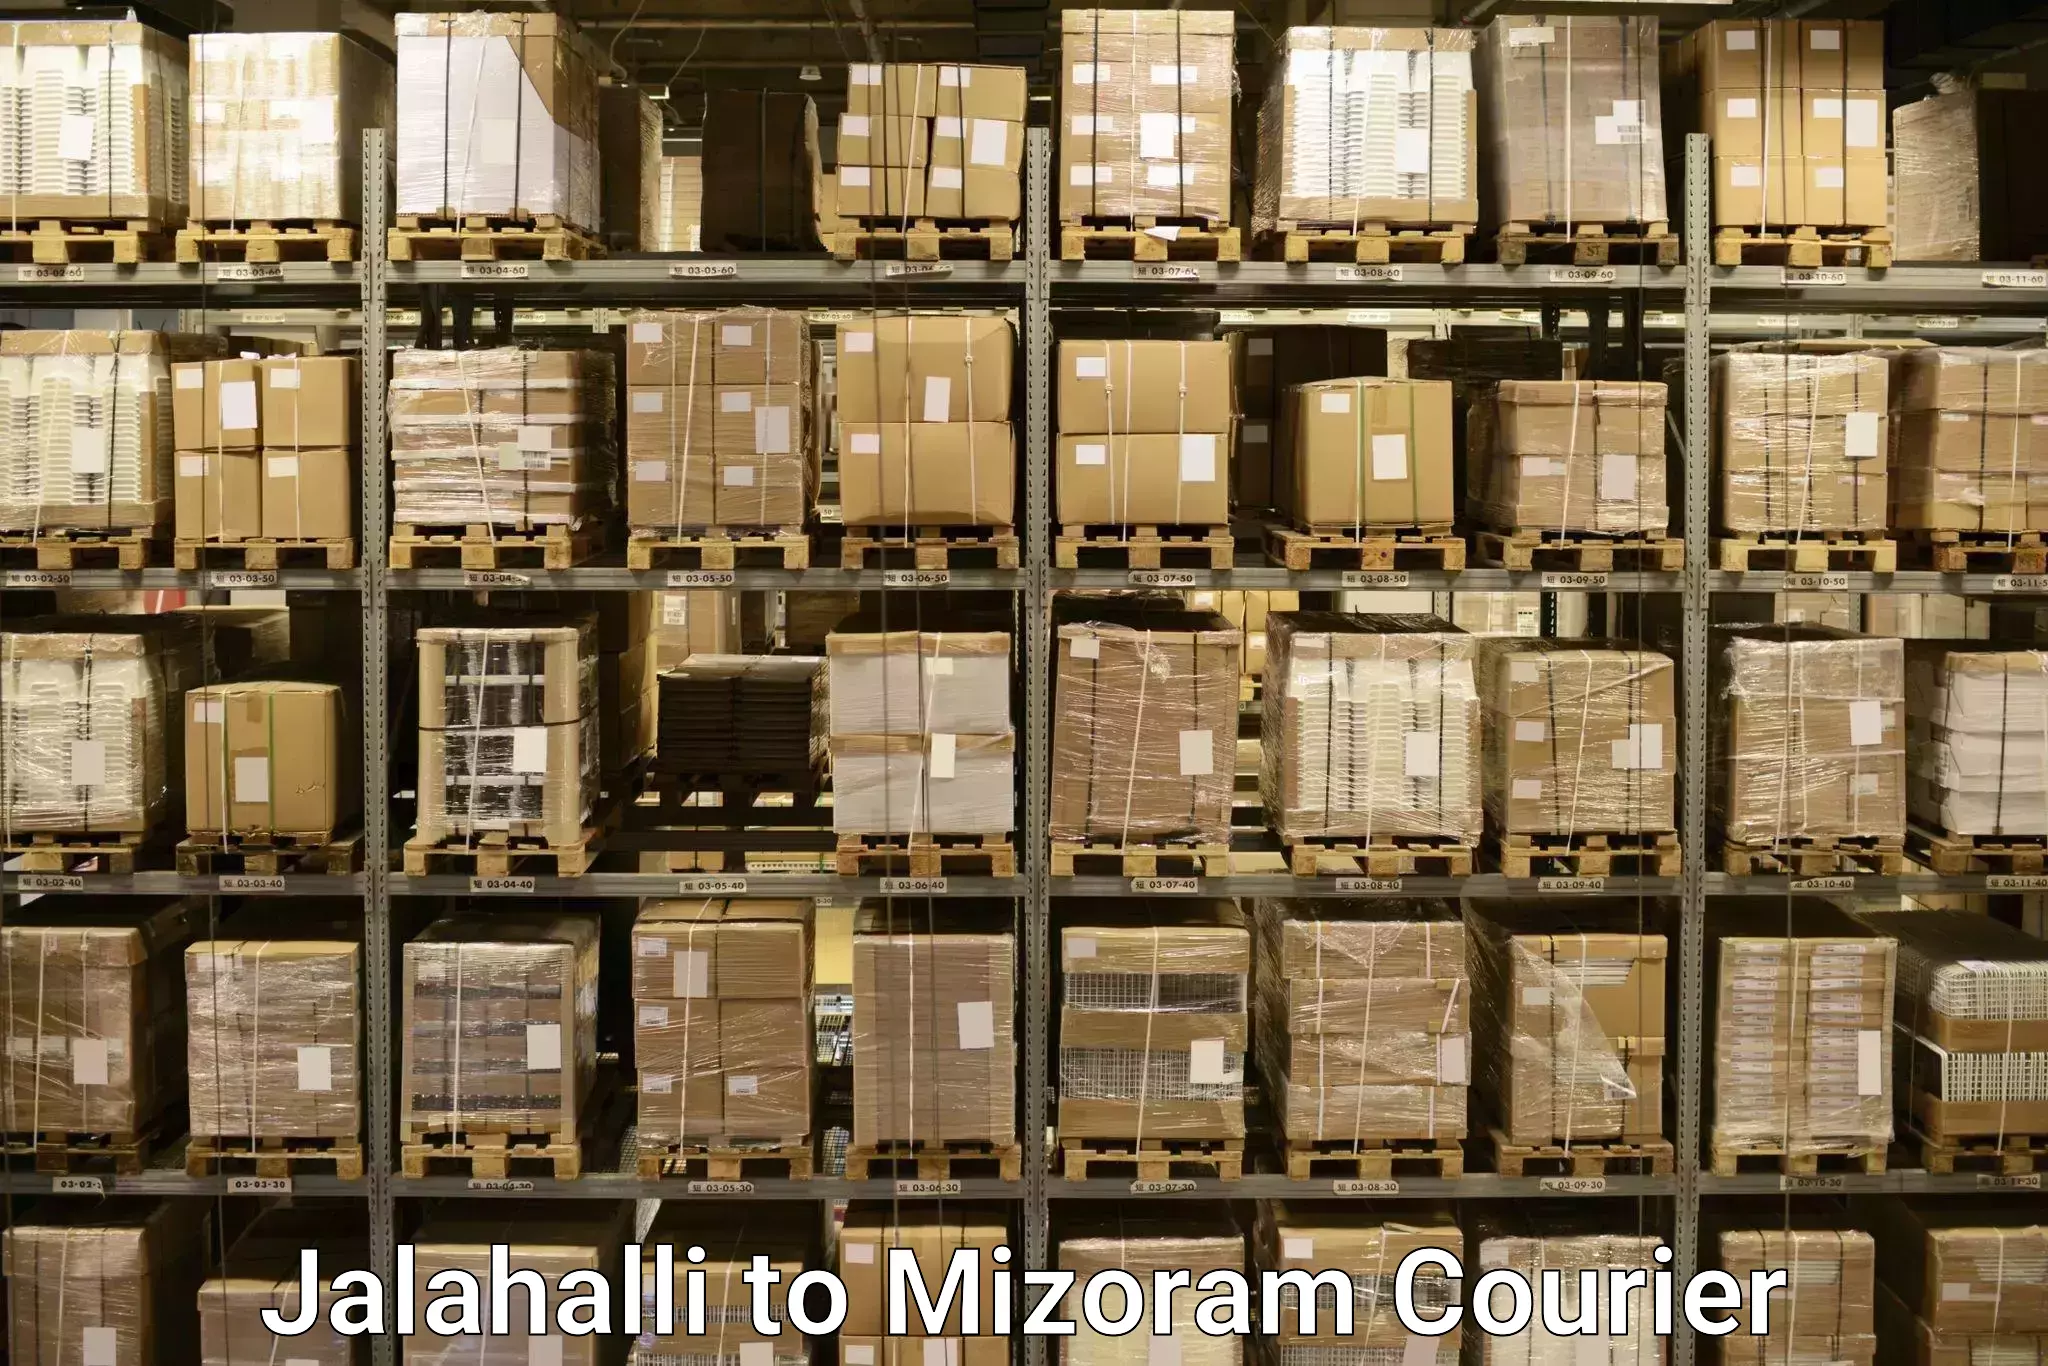 Luggage delivery app Jalahalli to Mizoram